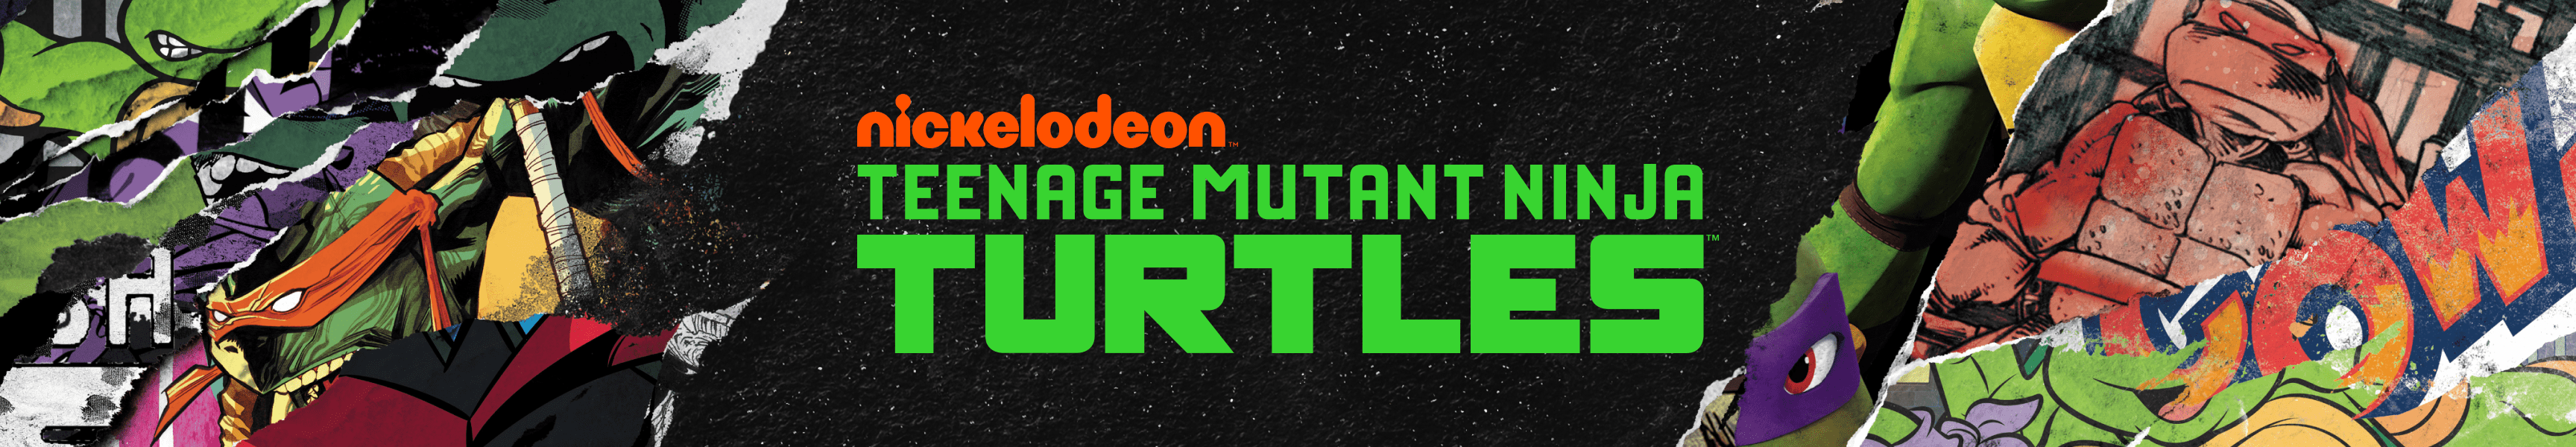 Teenage Mutant Ninja Turtles Chapeaux